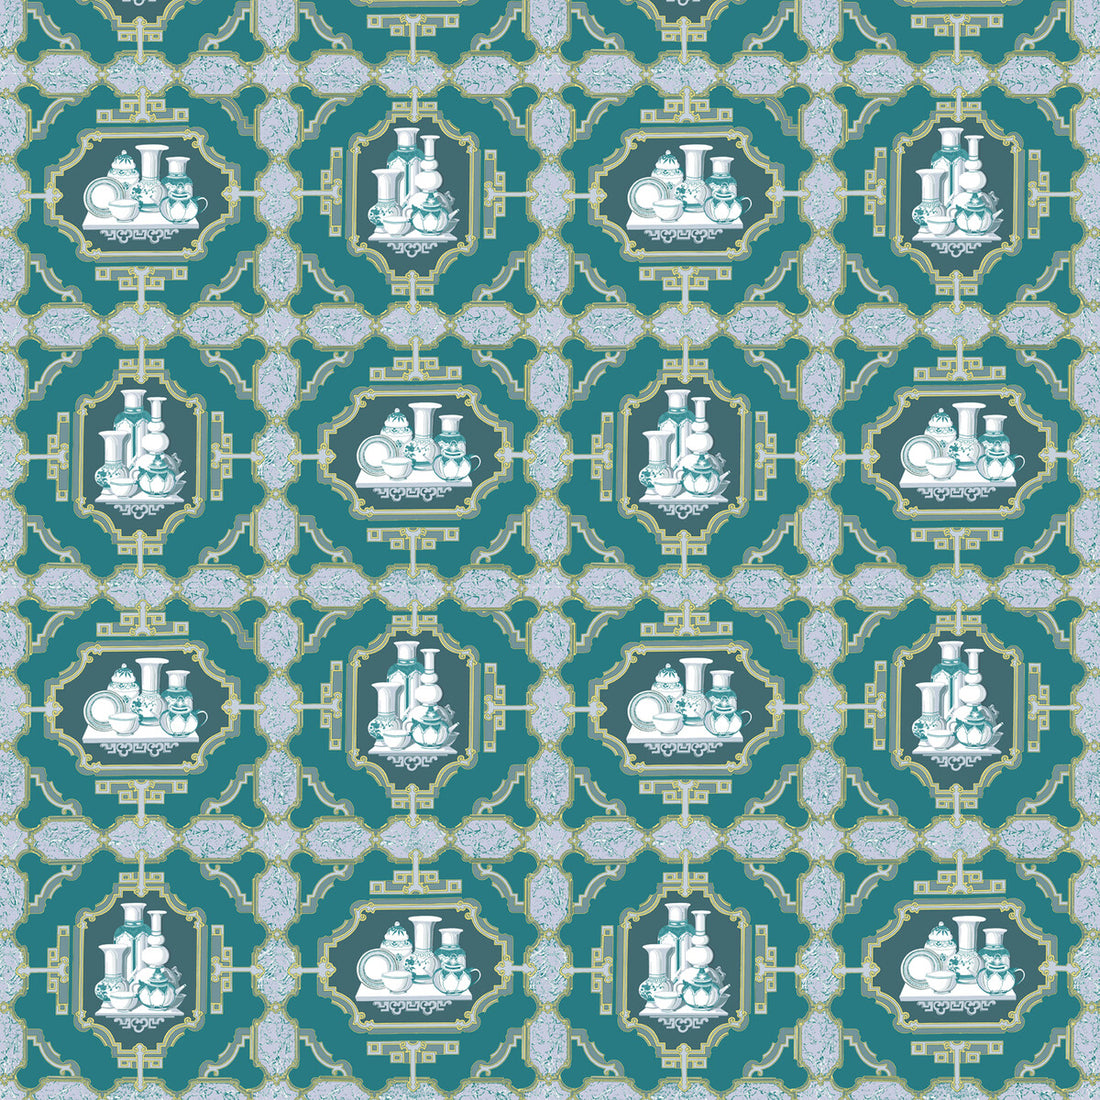 Porcelanas fabric in esmeralda color - pattern GDT5544.003.0 - by Gaston y Daniela in the Gaston Libreria collection